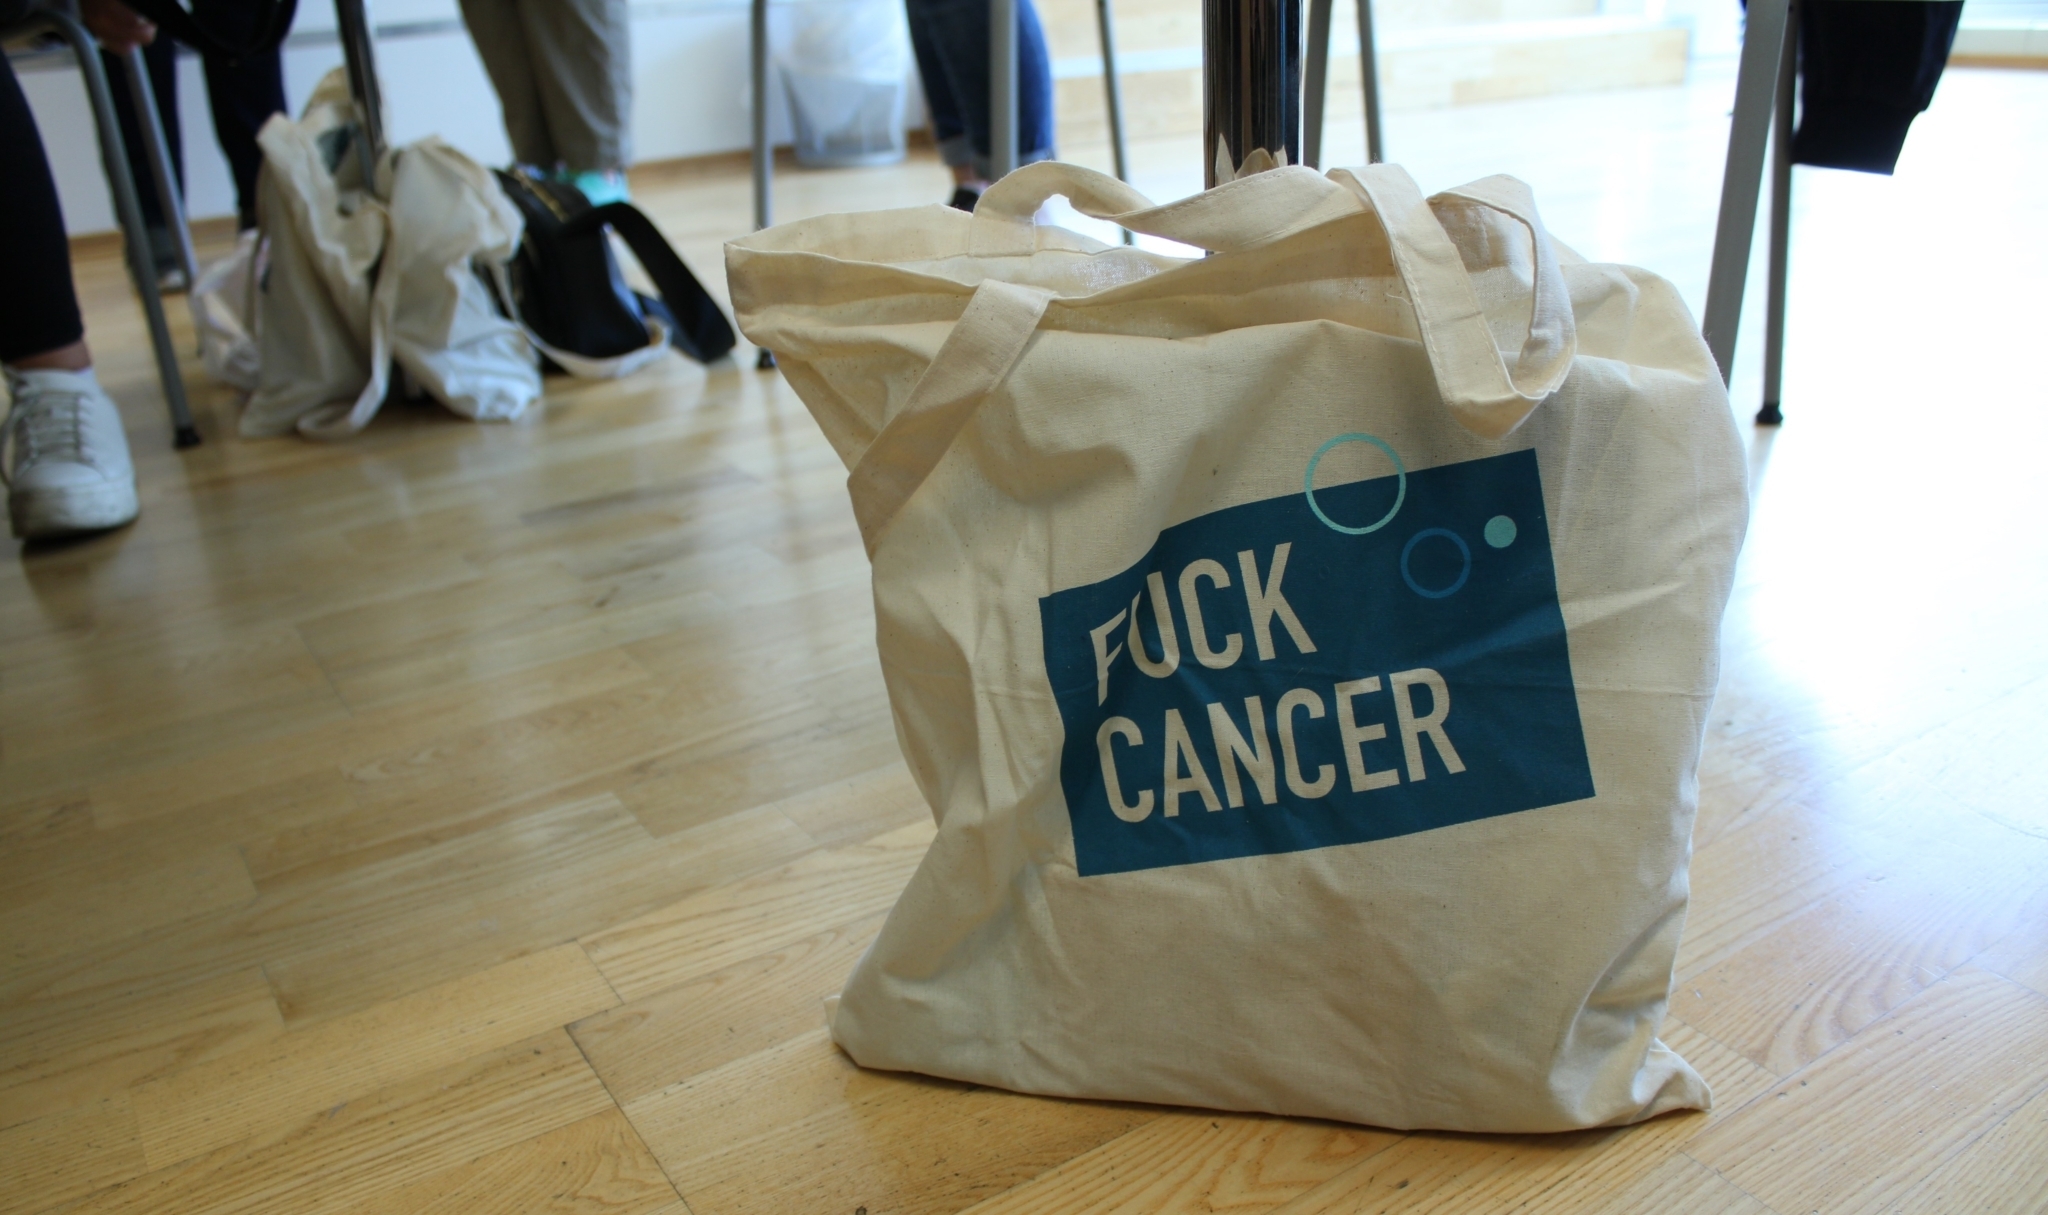 Et Fuck Cancer-bærenett med hvit tekst på blå firkant står på et gulv. I bakgrunn skimtes stolbein og føtter med sko på.